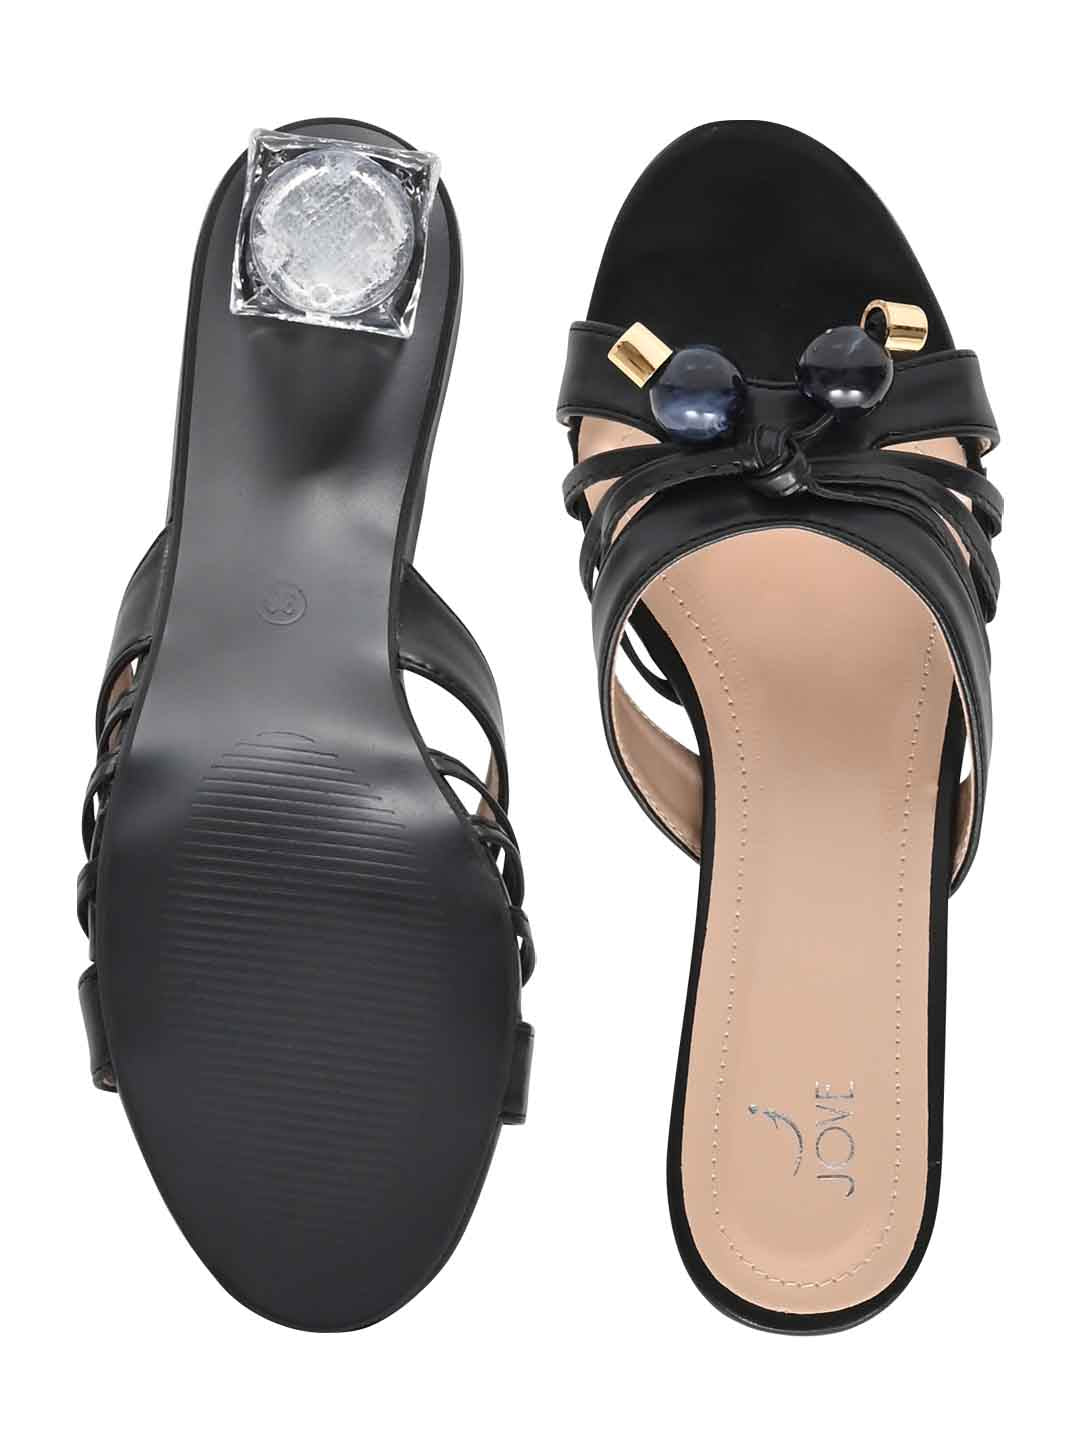 Footwear, Women Footwear, Black Sandals